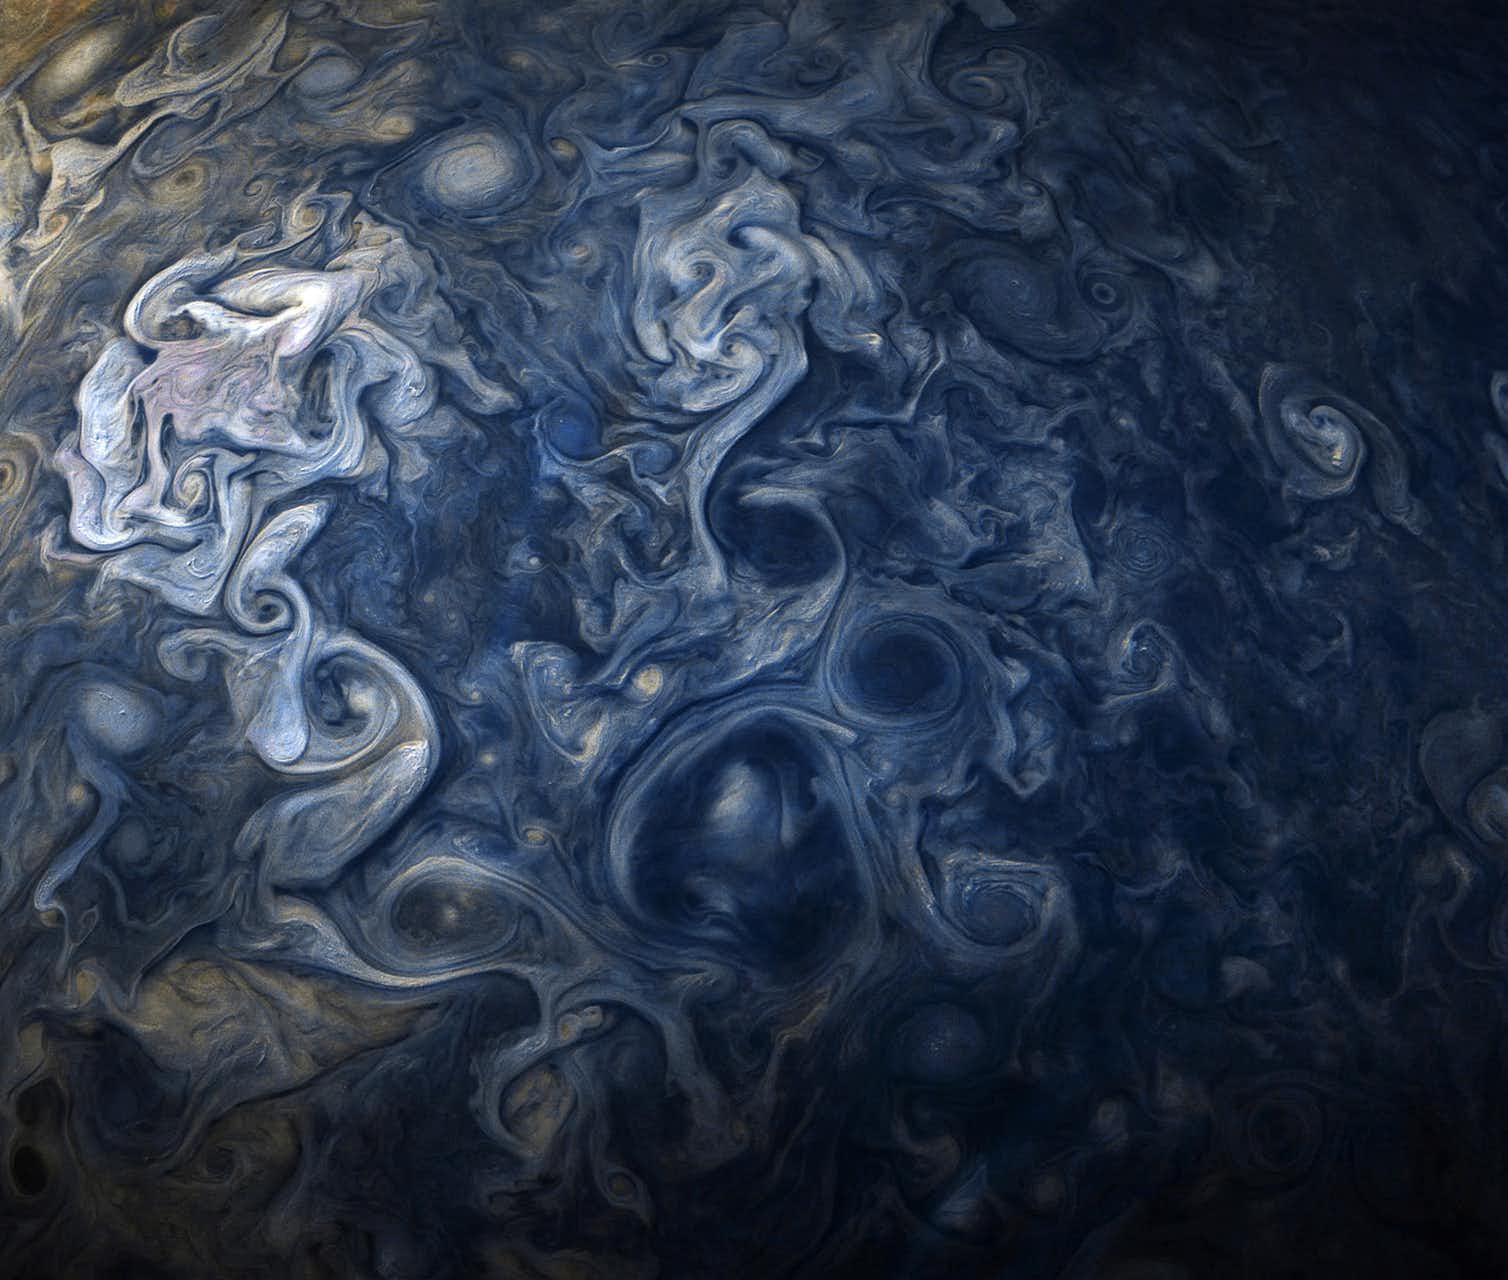 לתמונה הזאת קוראים לפעמים Jupiter Blues. תמונה משופרת שיצרו ג'רלד אייקסטאט ושון דורן (CC BY-NC-SA) על בסיס תמונות שסופקו באדיבות NASA/JPL Caltech/SwRI/MSSS.